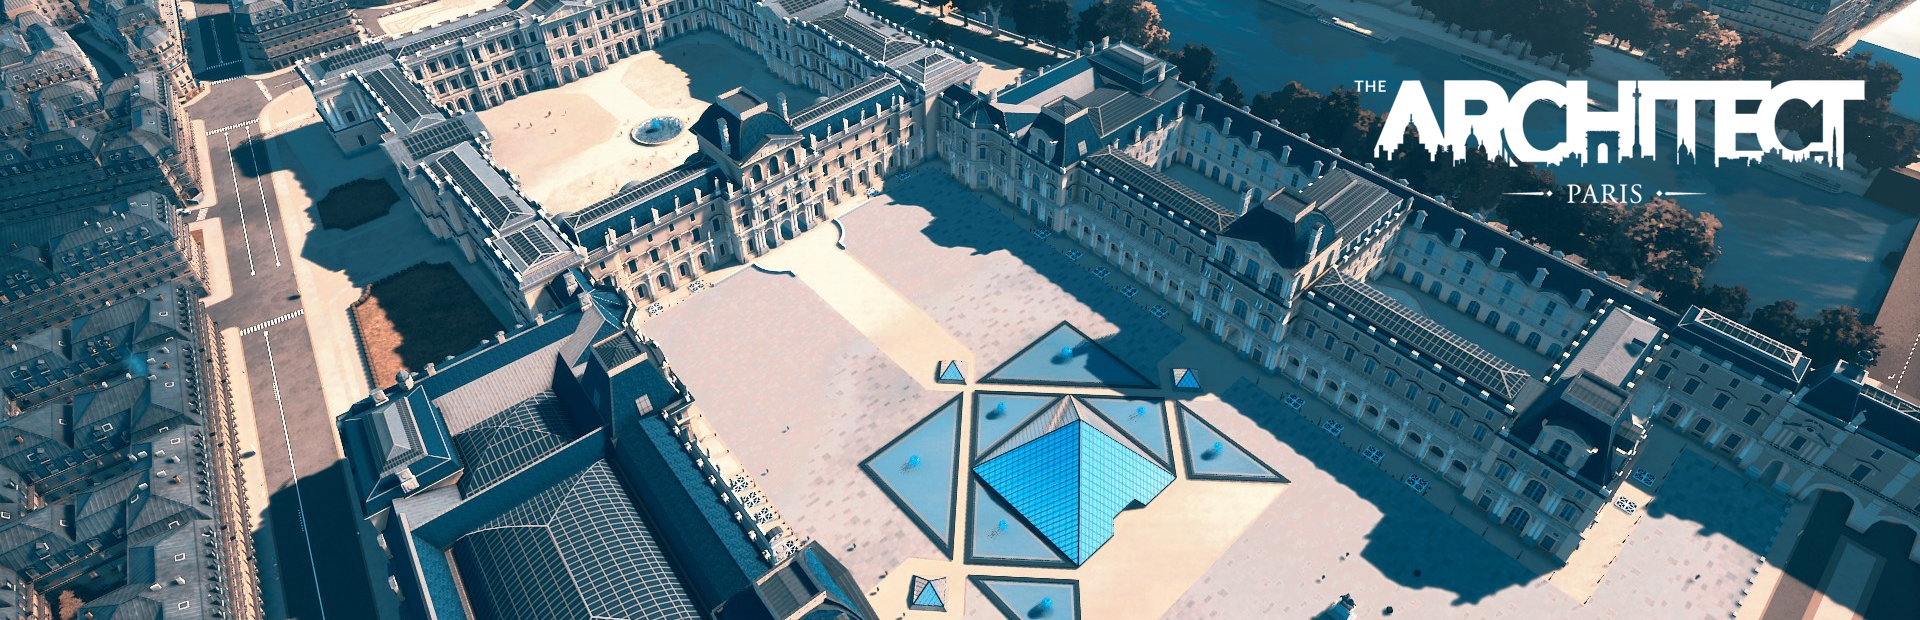 دانلود بازی The Architect: Paris برای پی سی | گیمباتو